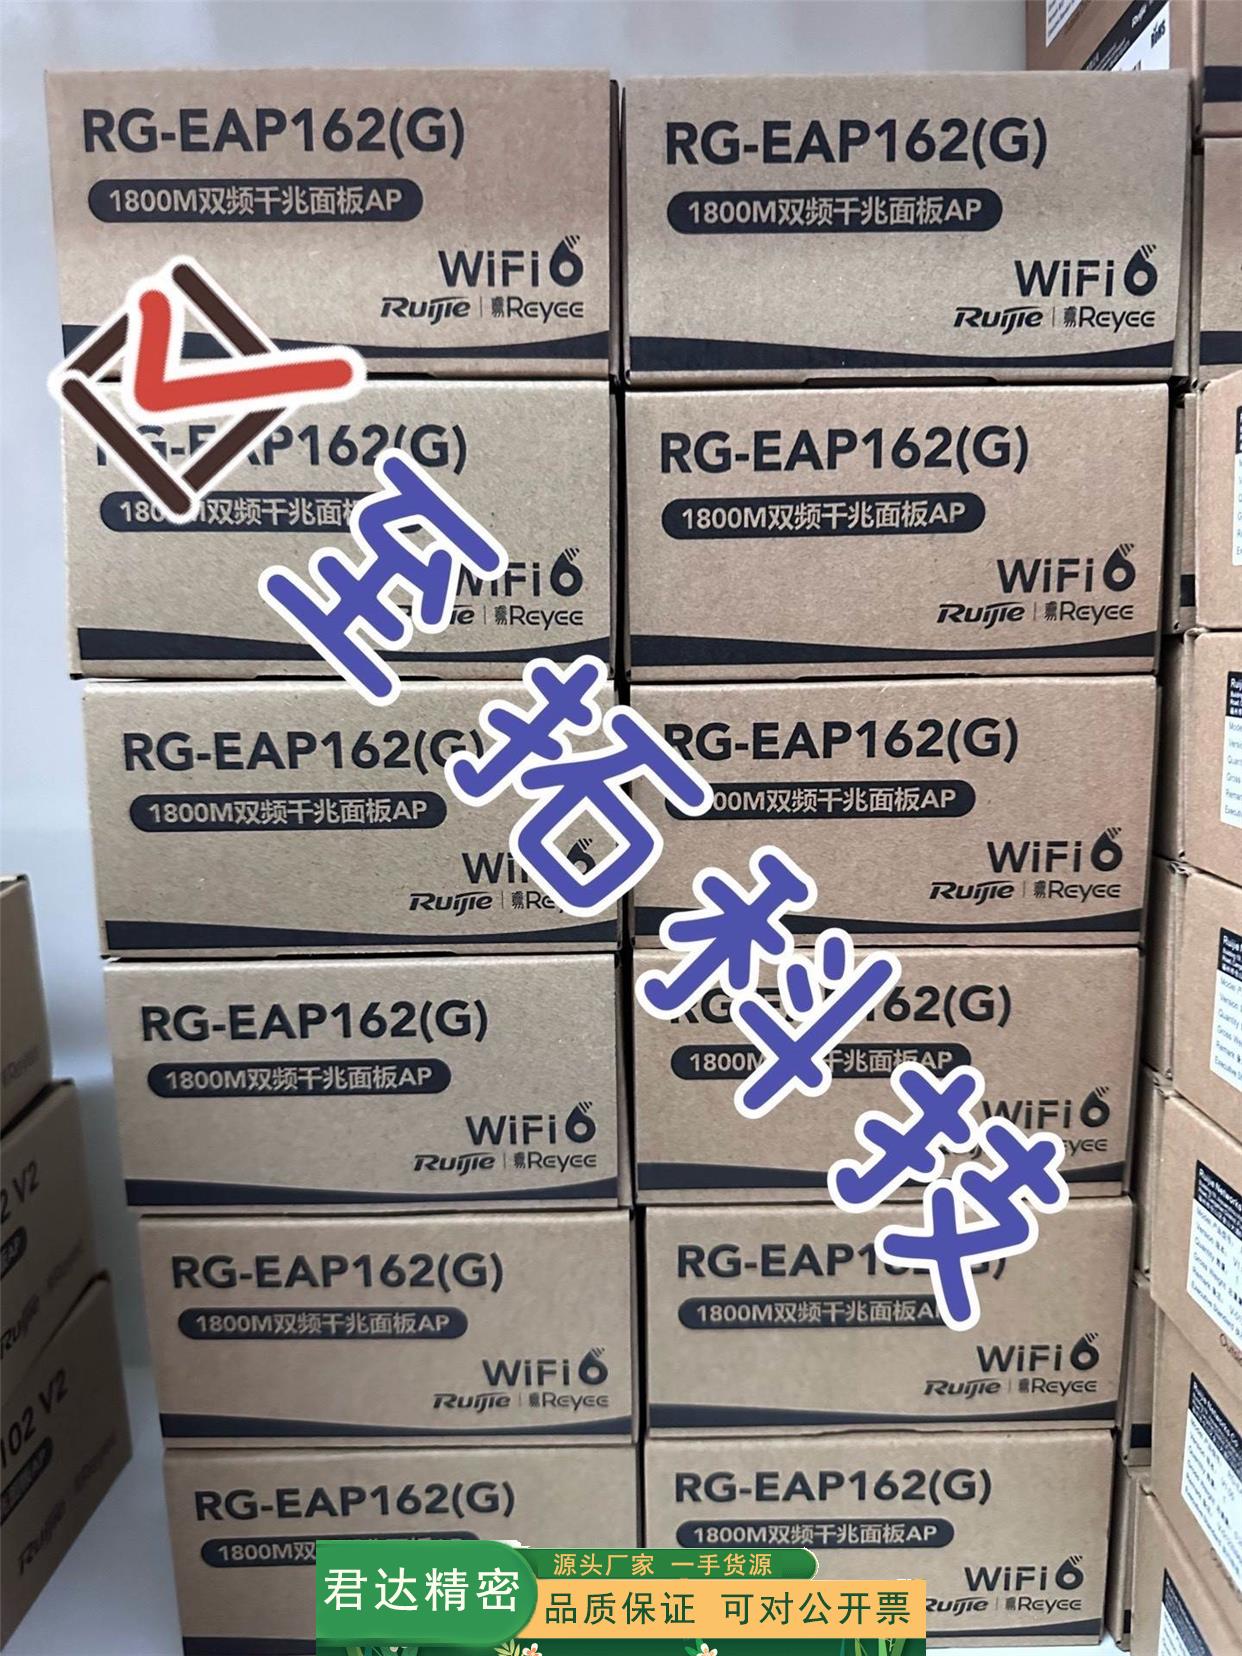 原装正品锐捷RG-EAP162(G)无线AP 2个起,锐捷测试包好质量保证议